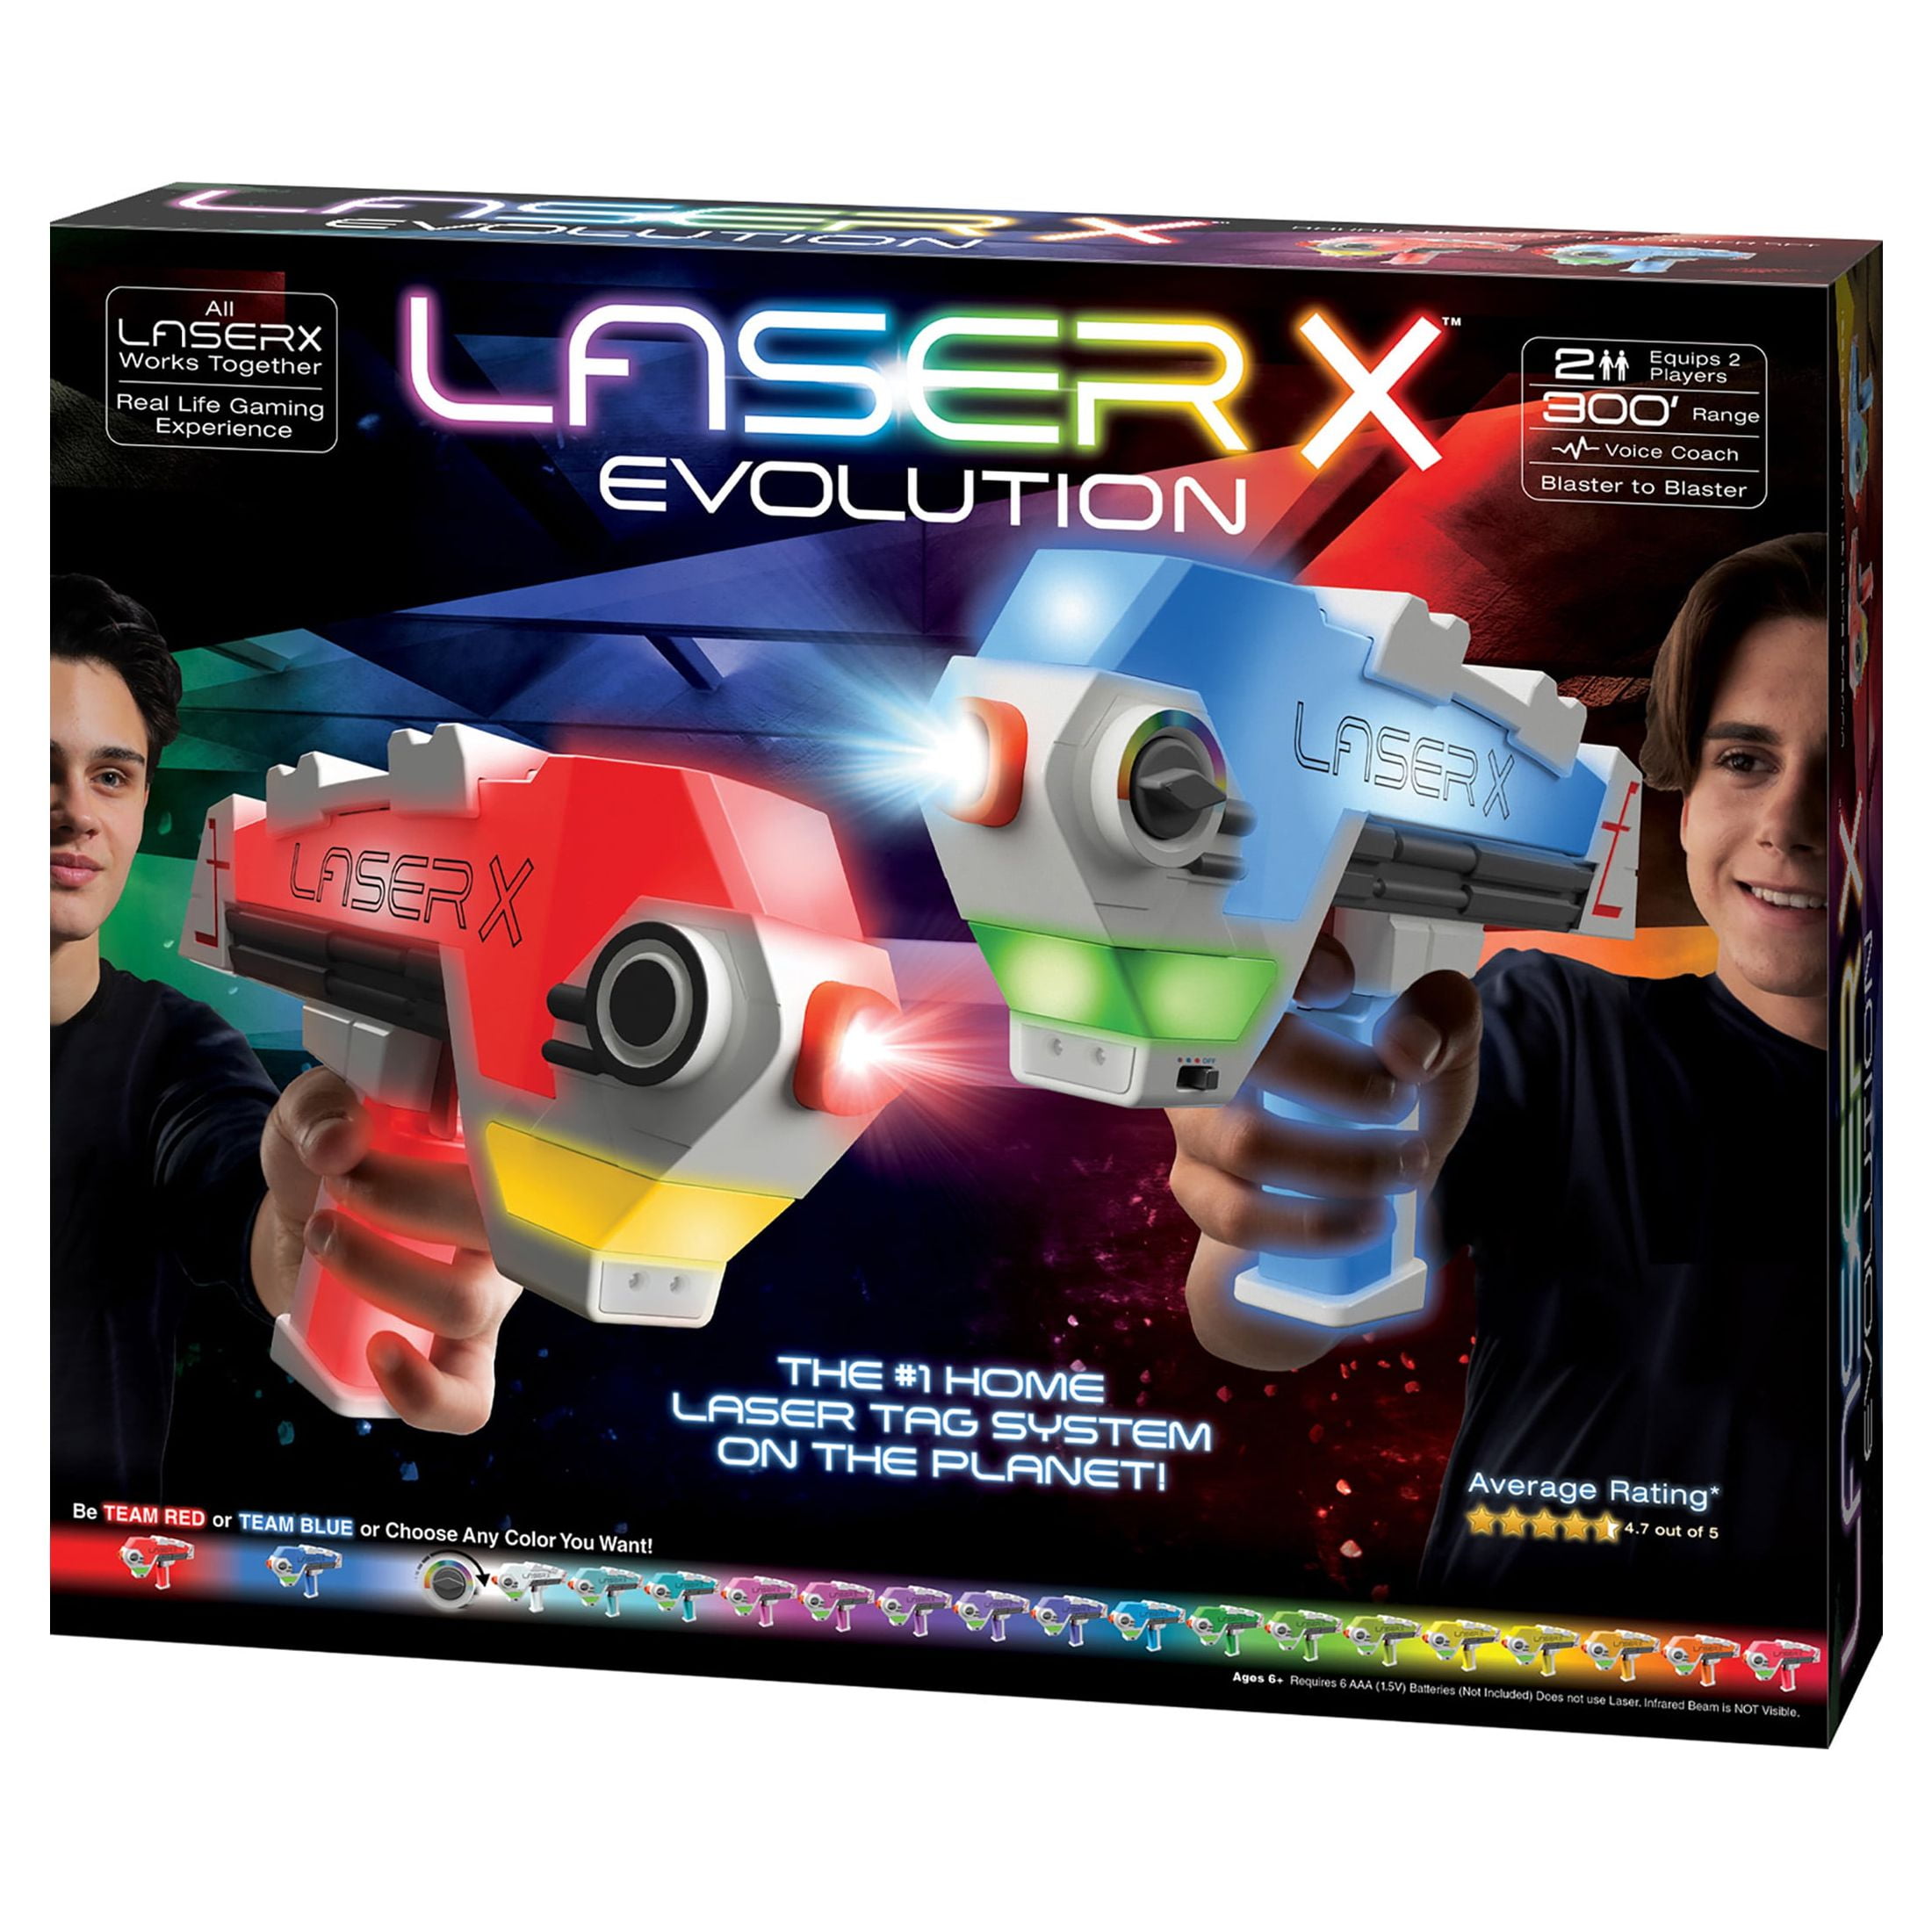 Promo Laser X Double Blaster évolution chez La Grande Récré